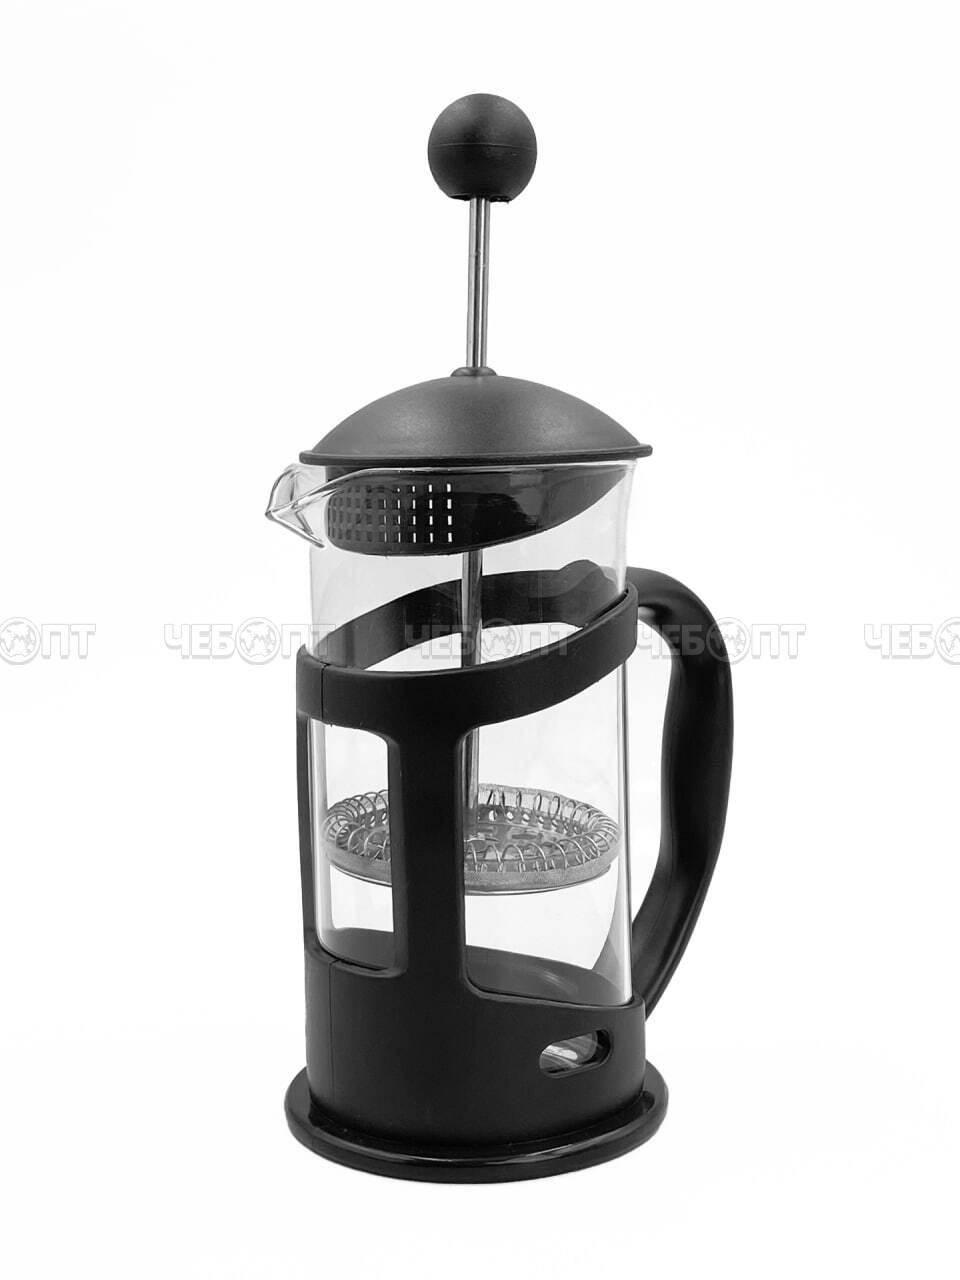 Чайник / кофейник френч-пресс 350 мл MYC-1 жаропрочное стекло, корпус пластмассовый, стальной фильтр арт. 260158 $ [40] GOODSEE. ЧЕБОПТ.